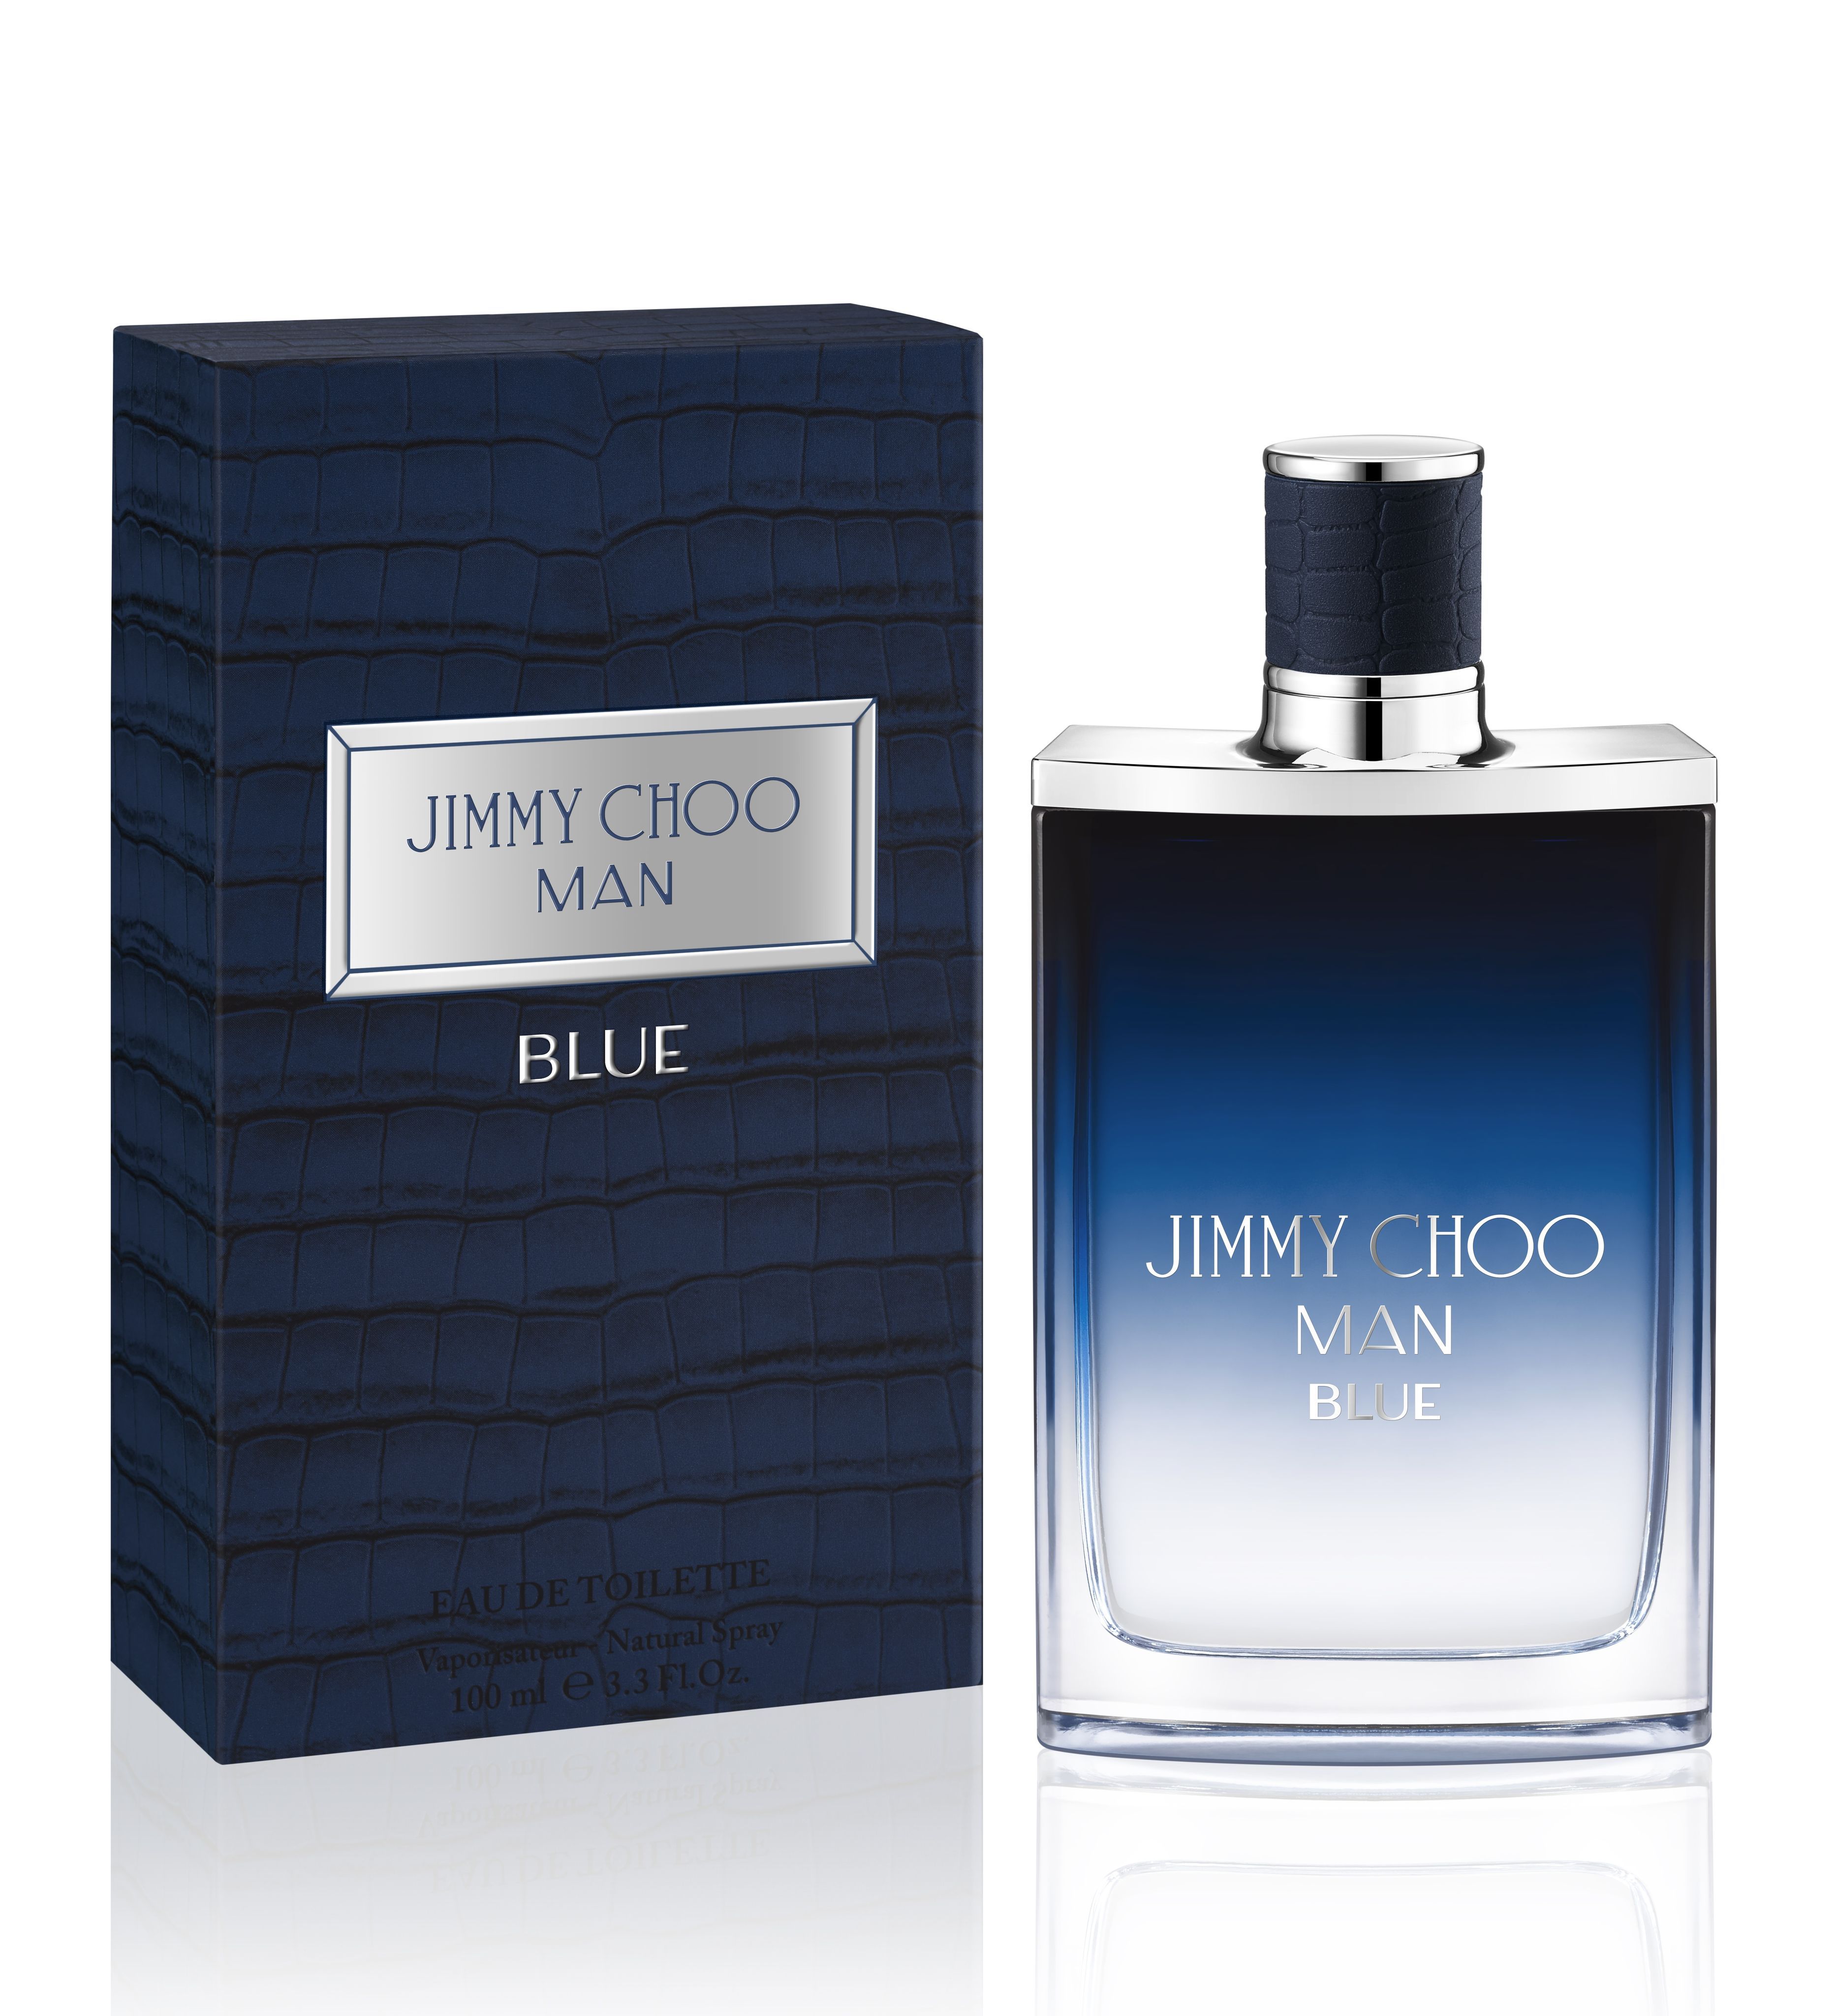 Jimmy Choo man Eau de Toilette. Jimmy Choo man EDT (30 мл). Jimmy Choo man часы. Jimmy Choo i want Choo синие.